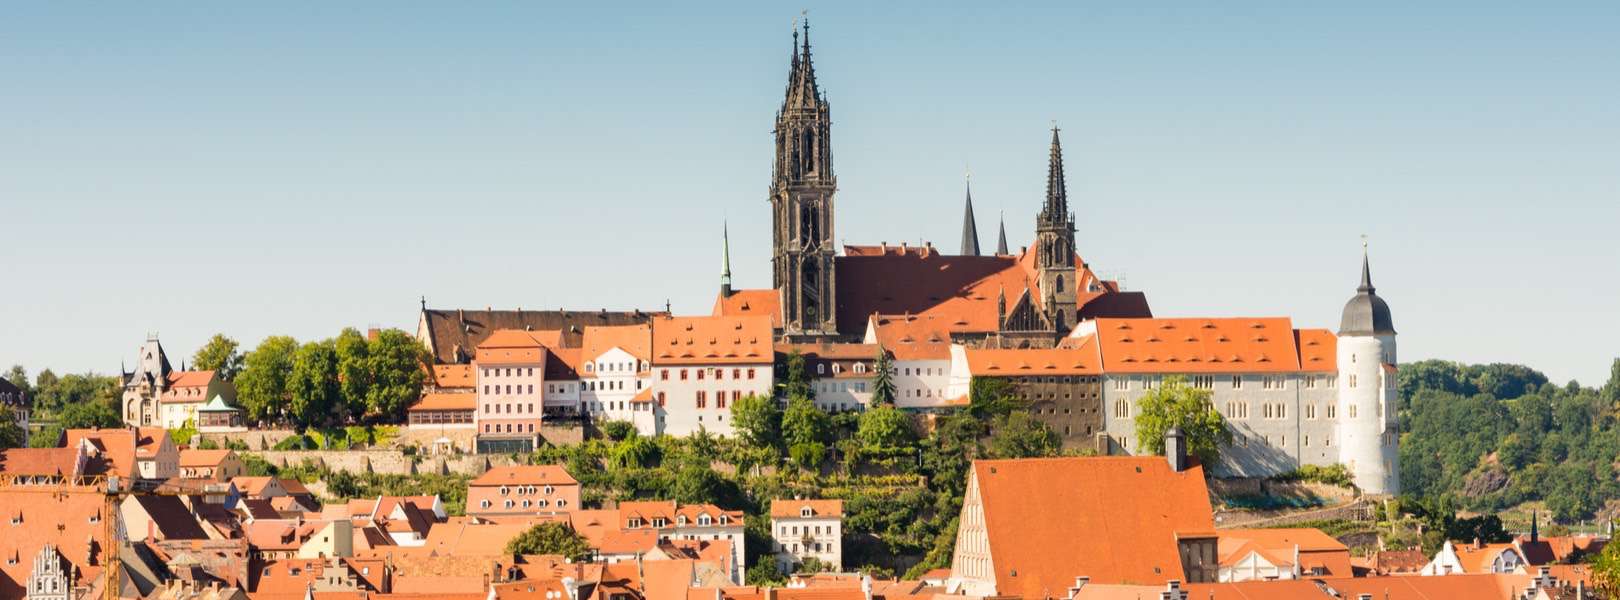 Blick auf die Stadt Meissen in Sachsen, die bekannt ist durch das Meissner Porzellan